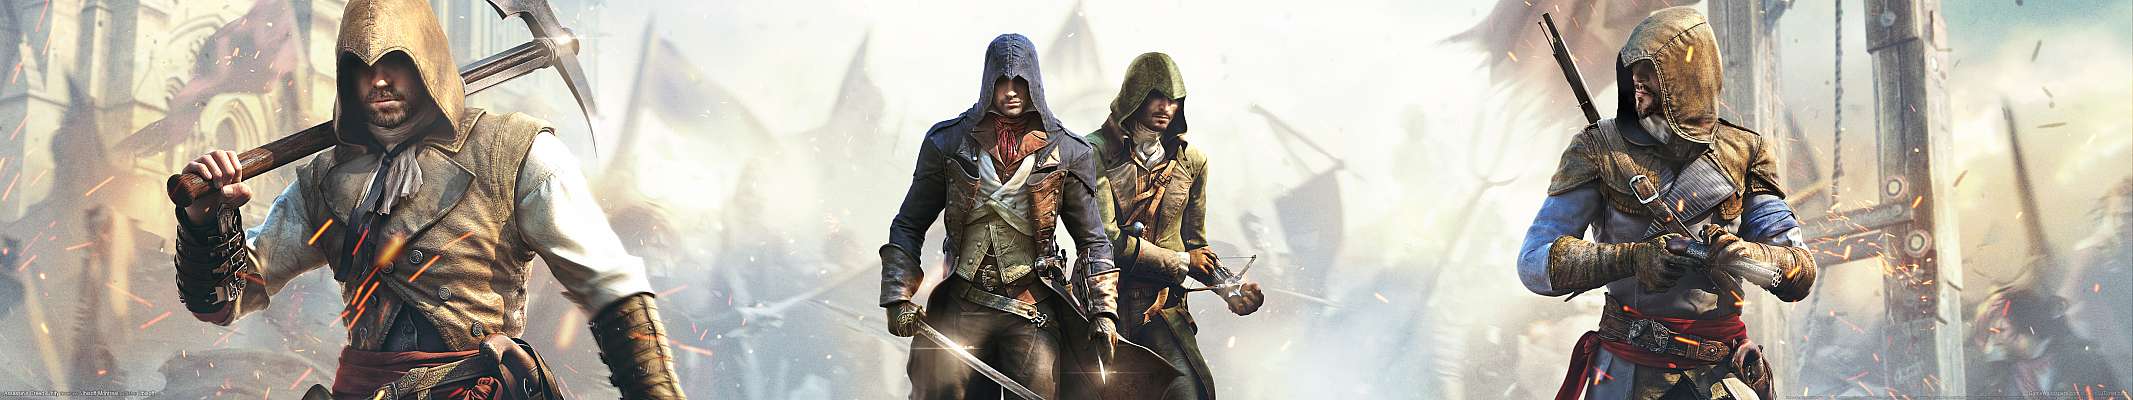 Assassin's Creed: Unity triple screen fond d'cran